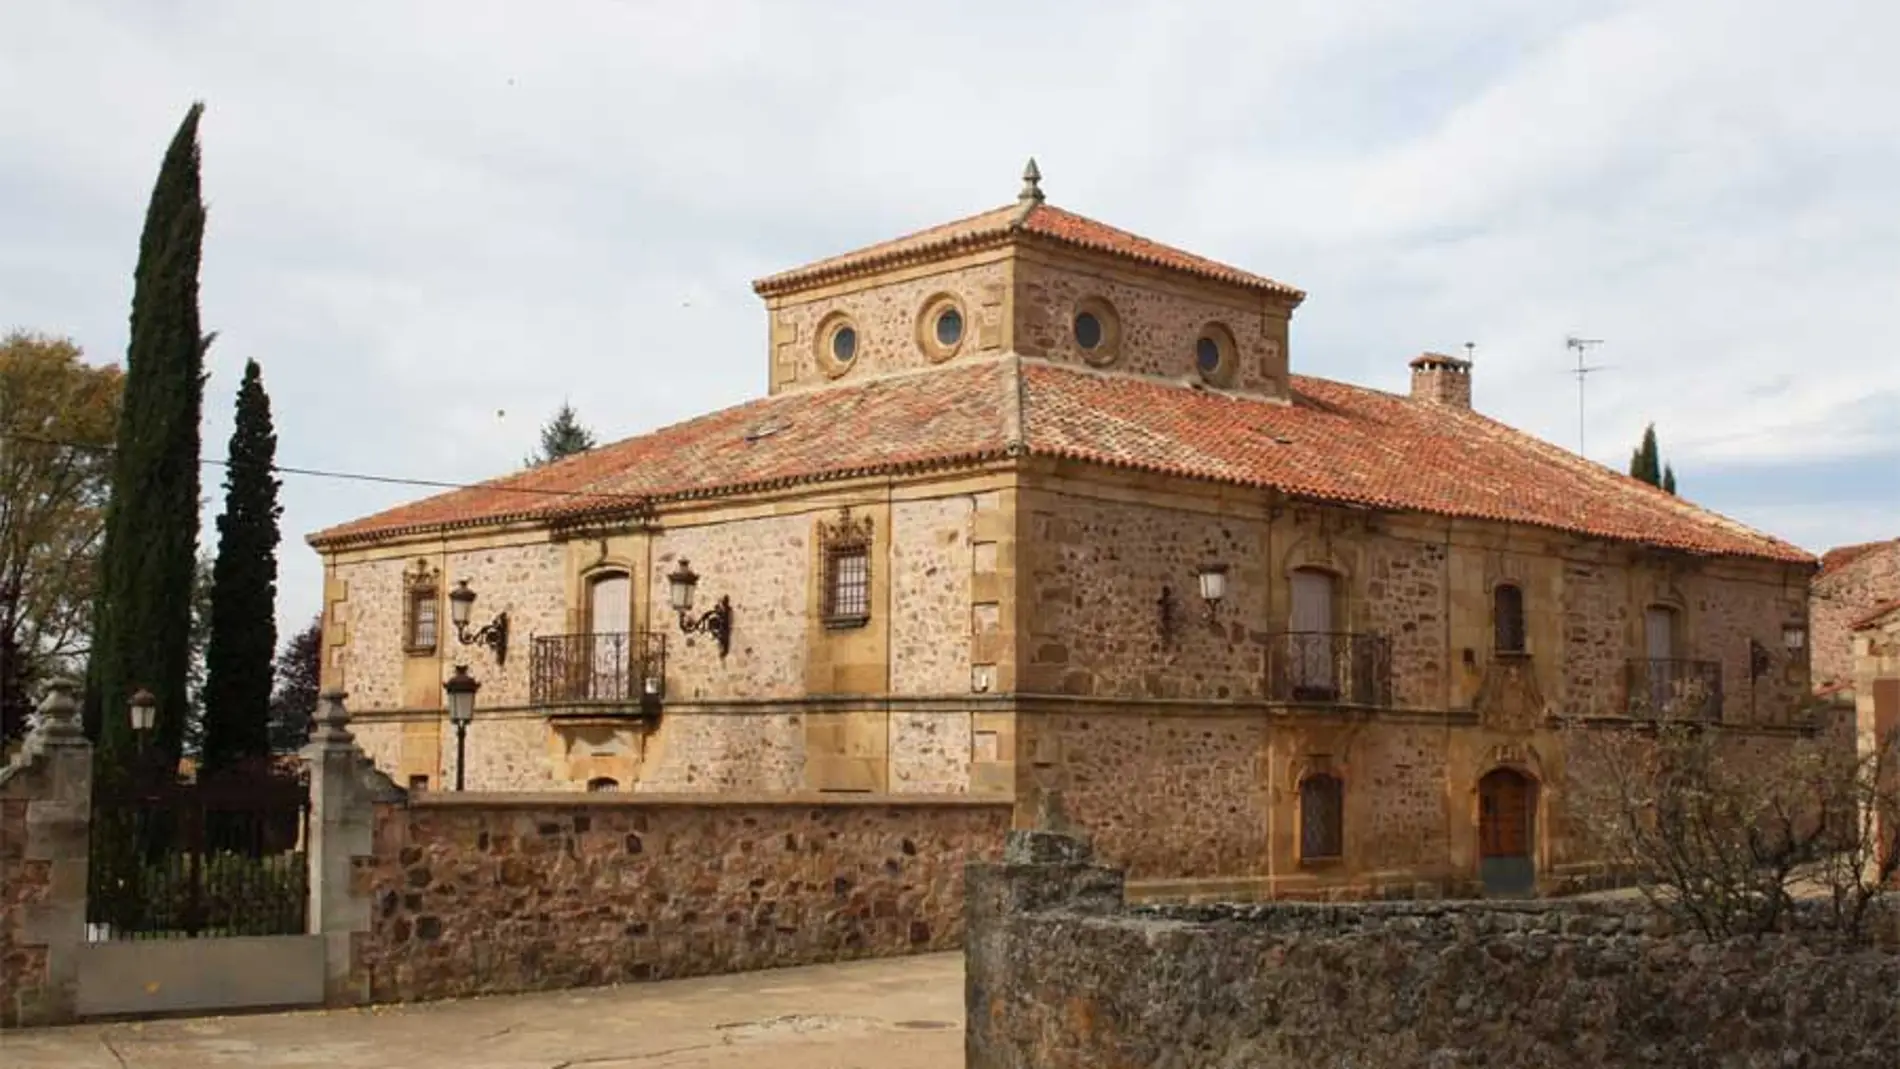 Casa Media Naranja, en el municipio soriano de Narros, considerada Bien de Interés Cultural